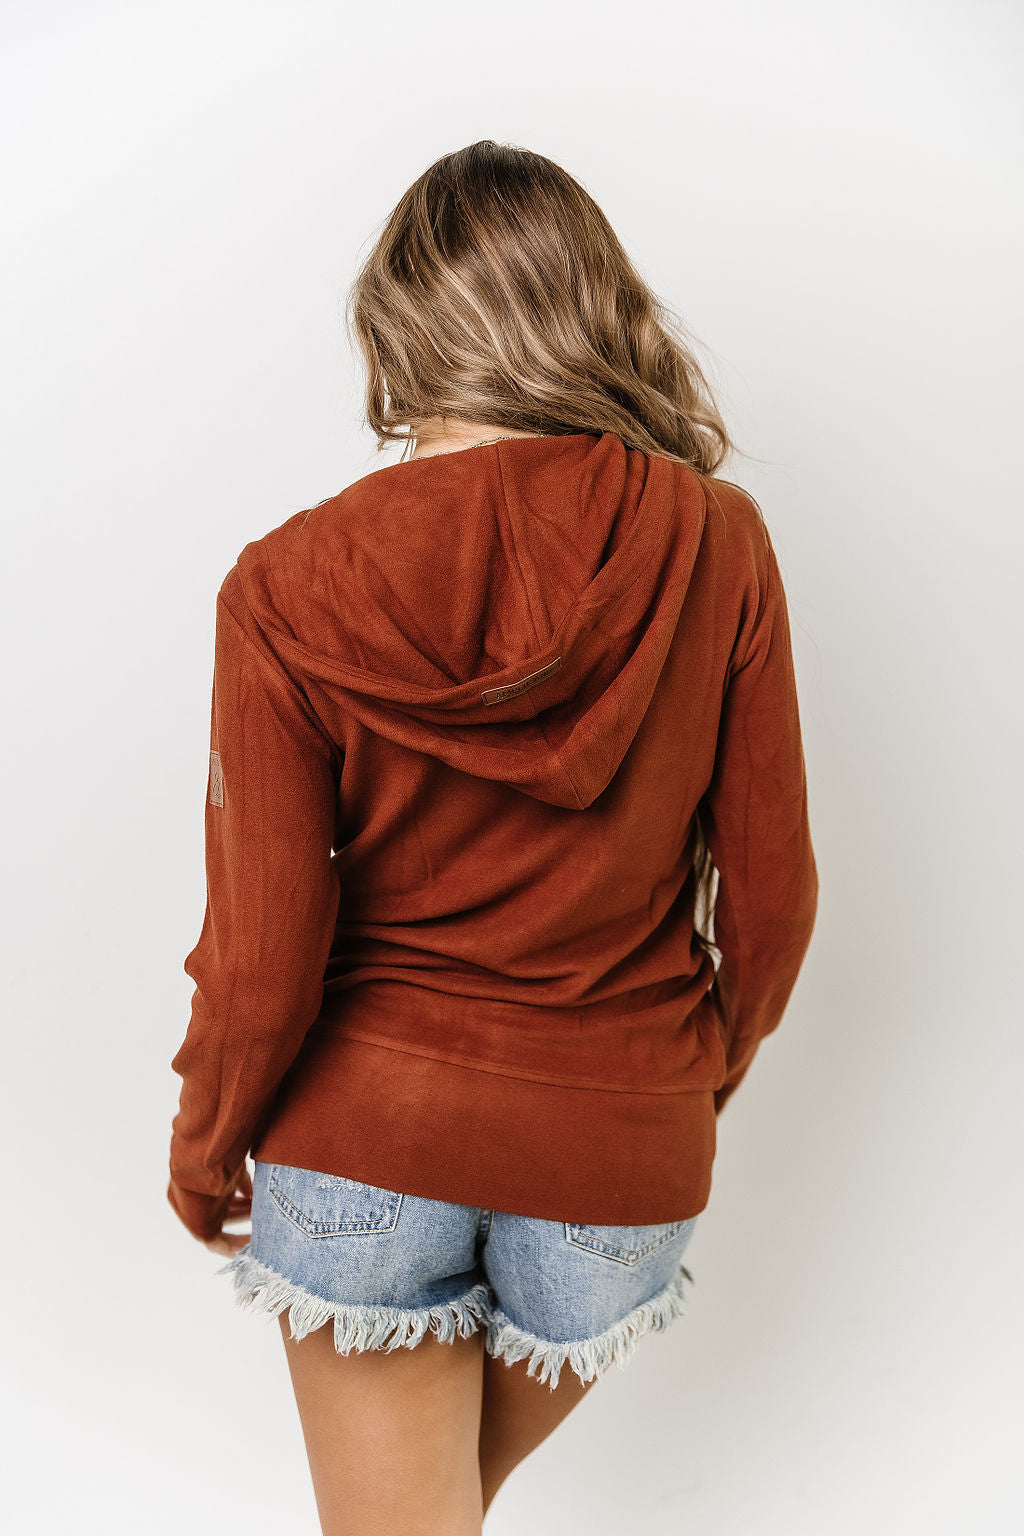 Chestnut Fleece Full Zip Ampersand Sweatshirt - Rose Grace Boutique 